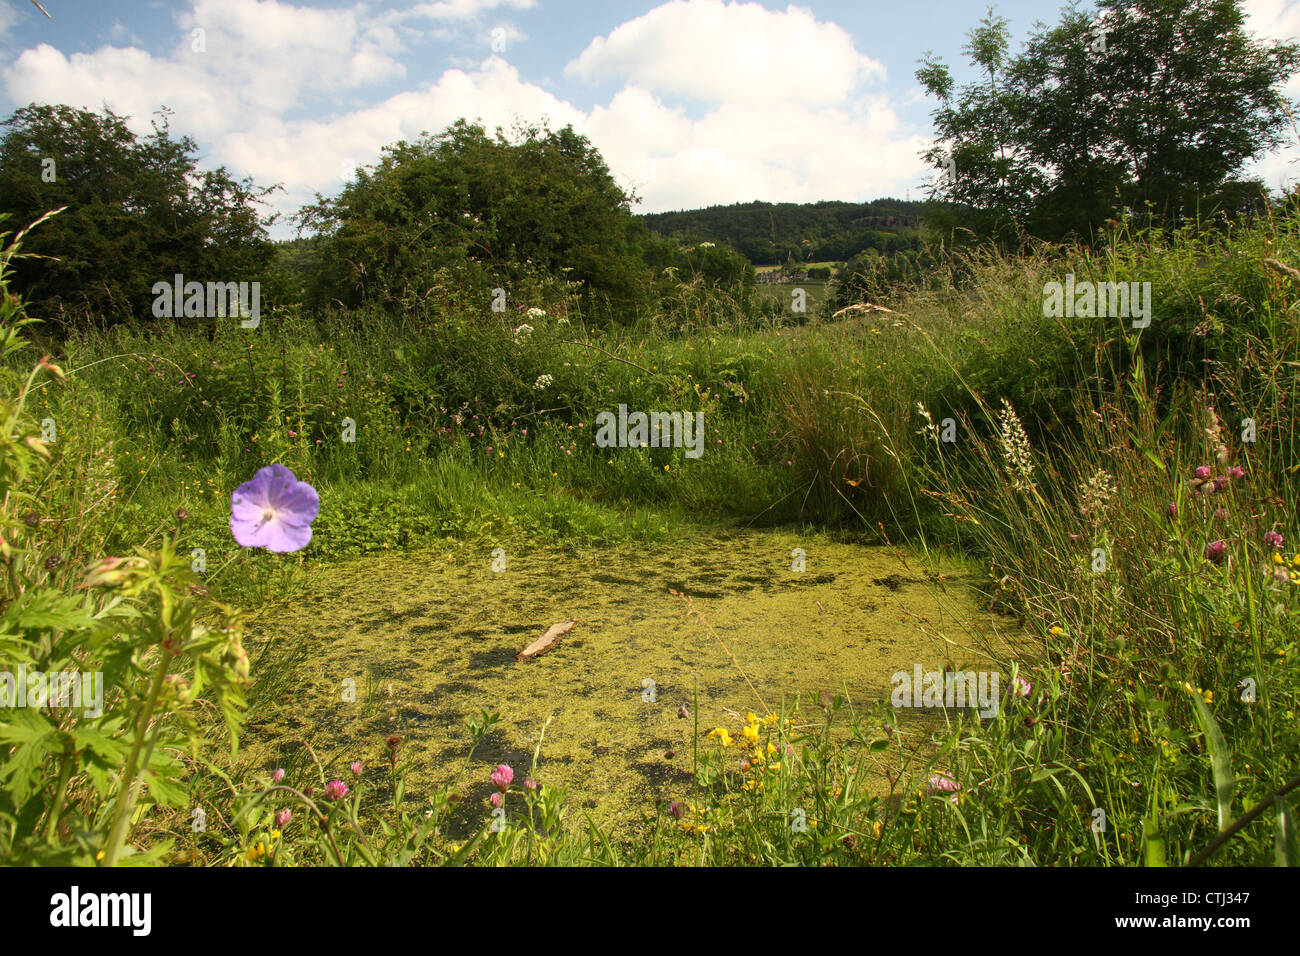 La rosée étang entouré de végétation, Derbyshire, Royaume-Uni.. Cet étang n'est pas utilisé pour le bétail de l'eau mais comme un refuge pour la faune. Banque D'Images